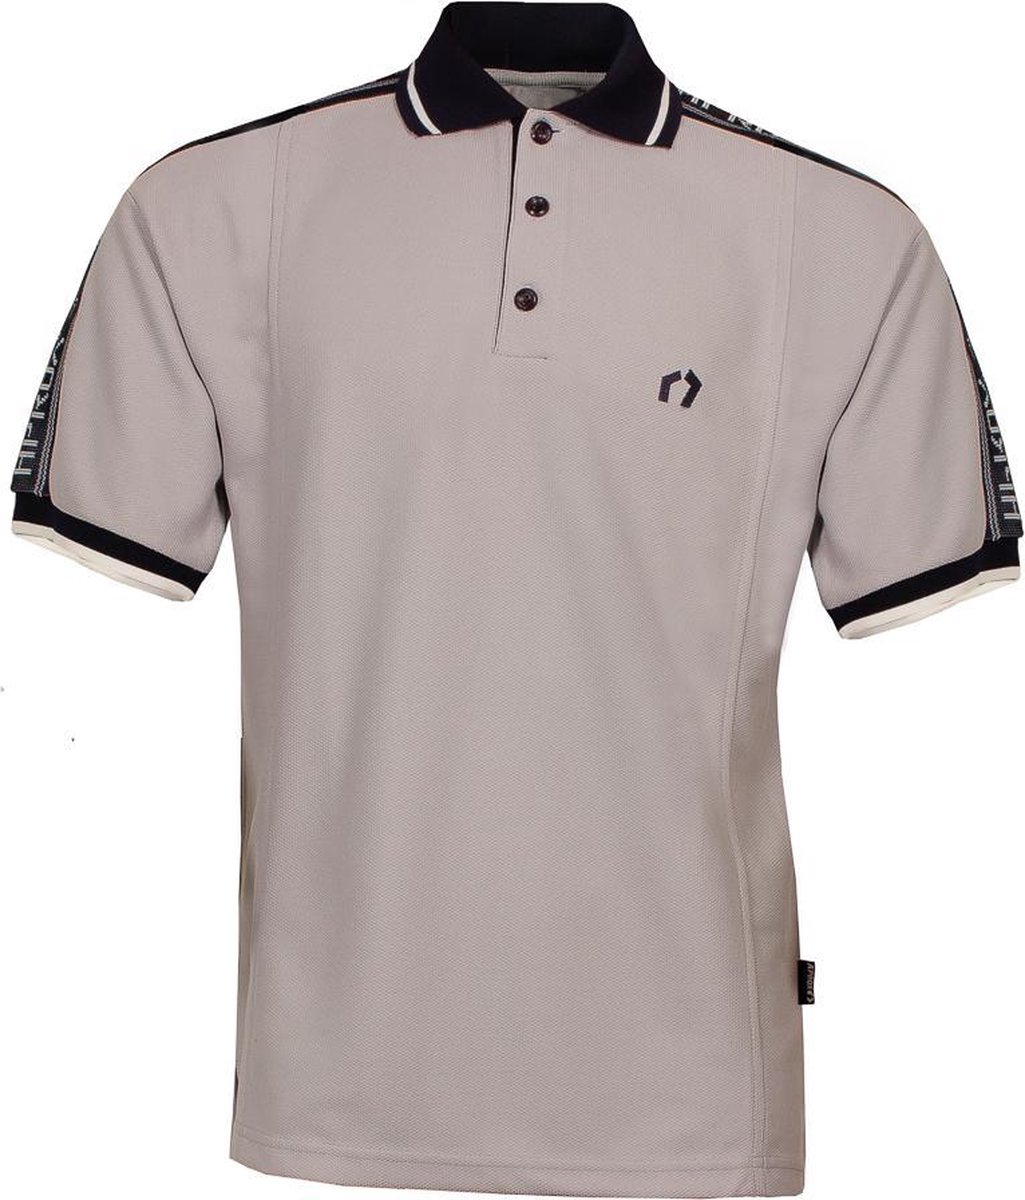 Heren jaren 50 Vintage Look polo shirt van ons merk A’prox Grijs met tekst op mouwen PSH5075S Maat L